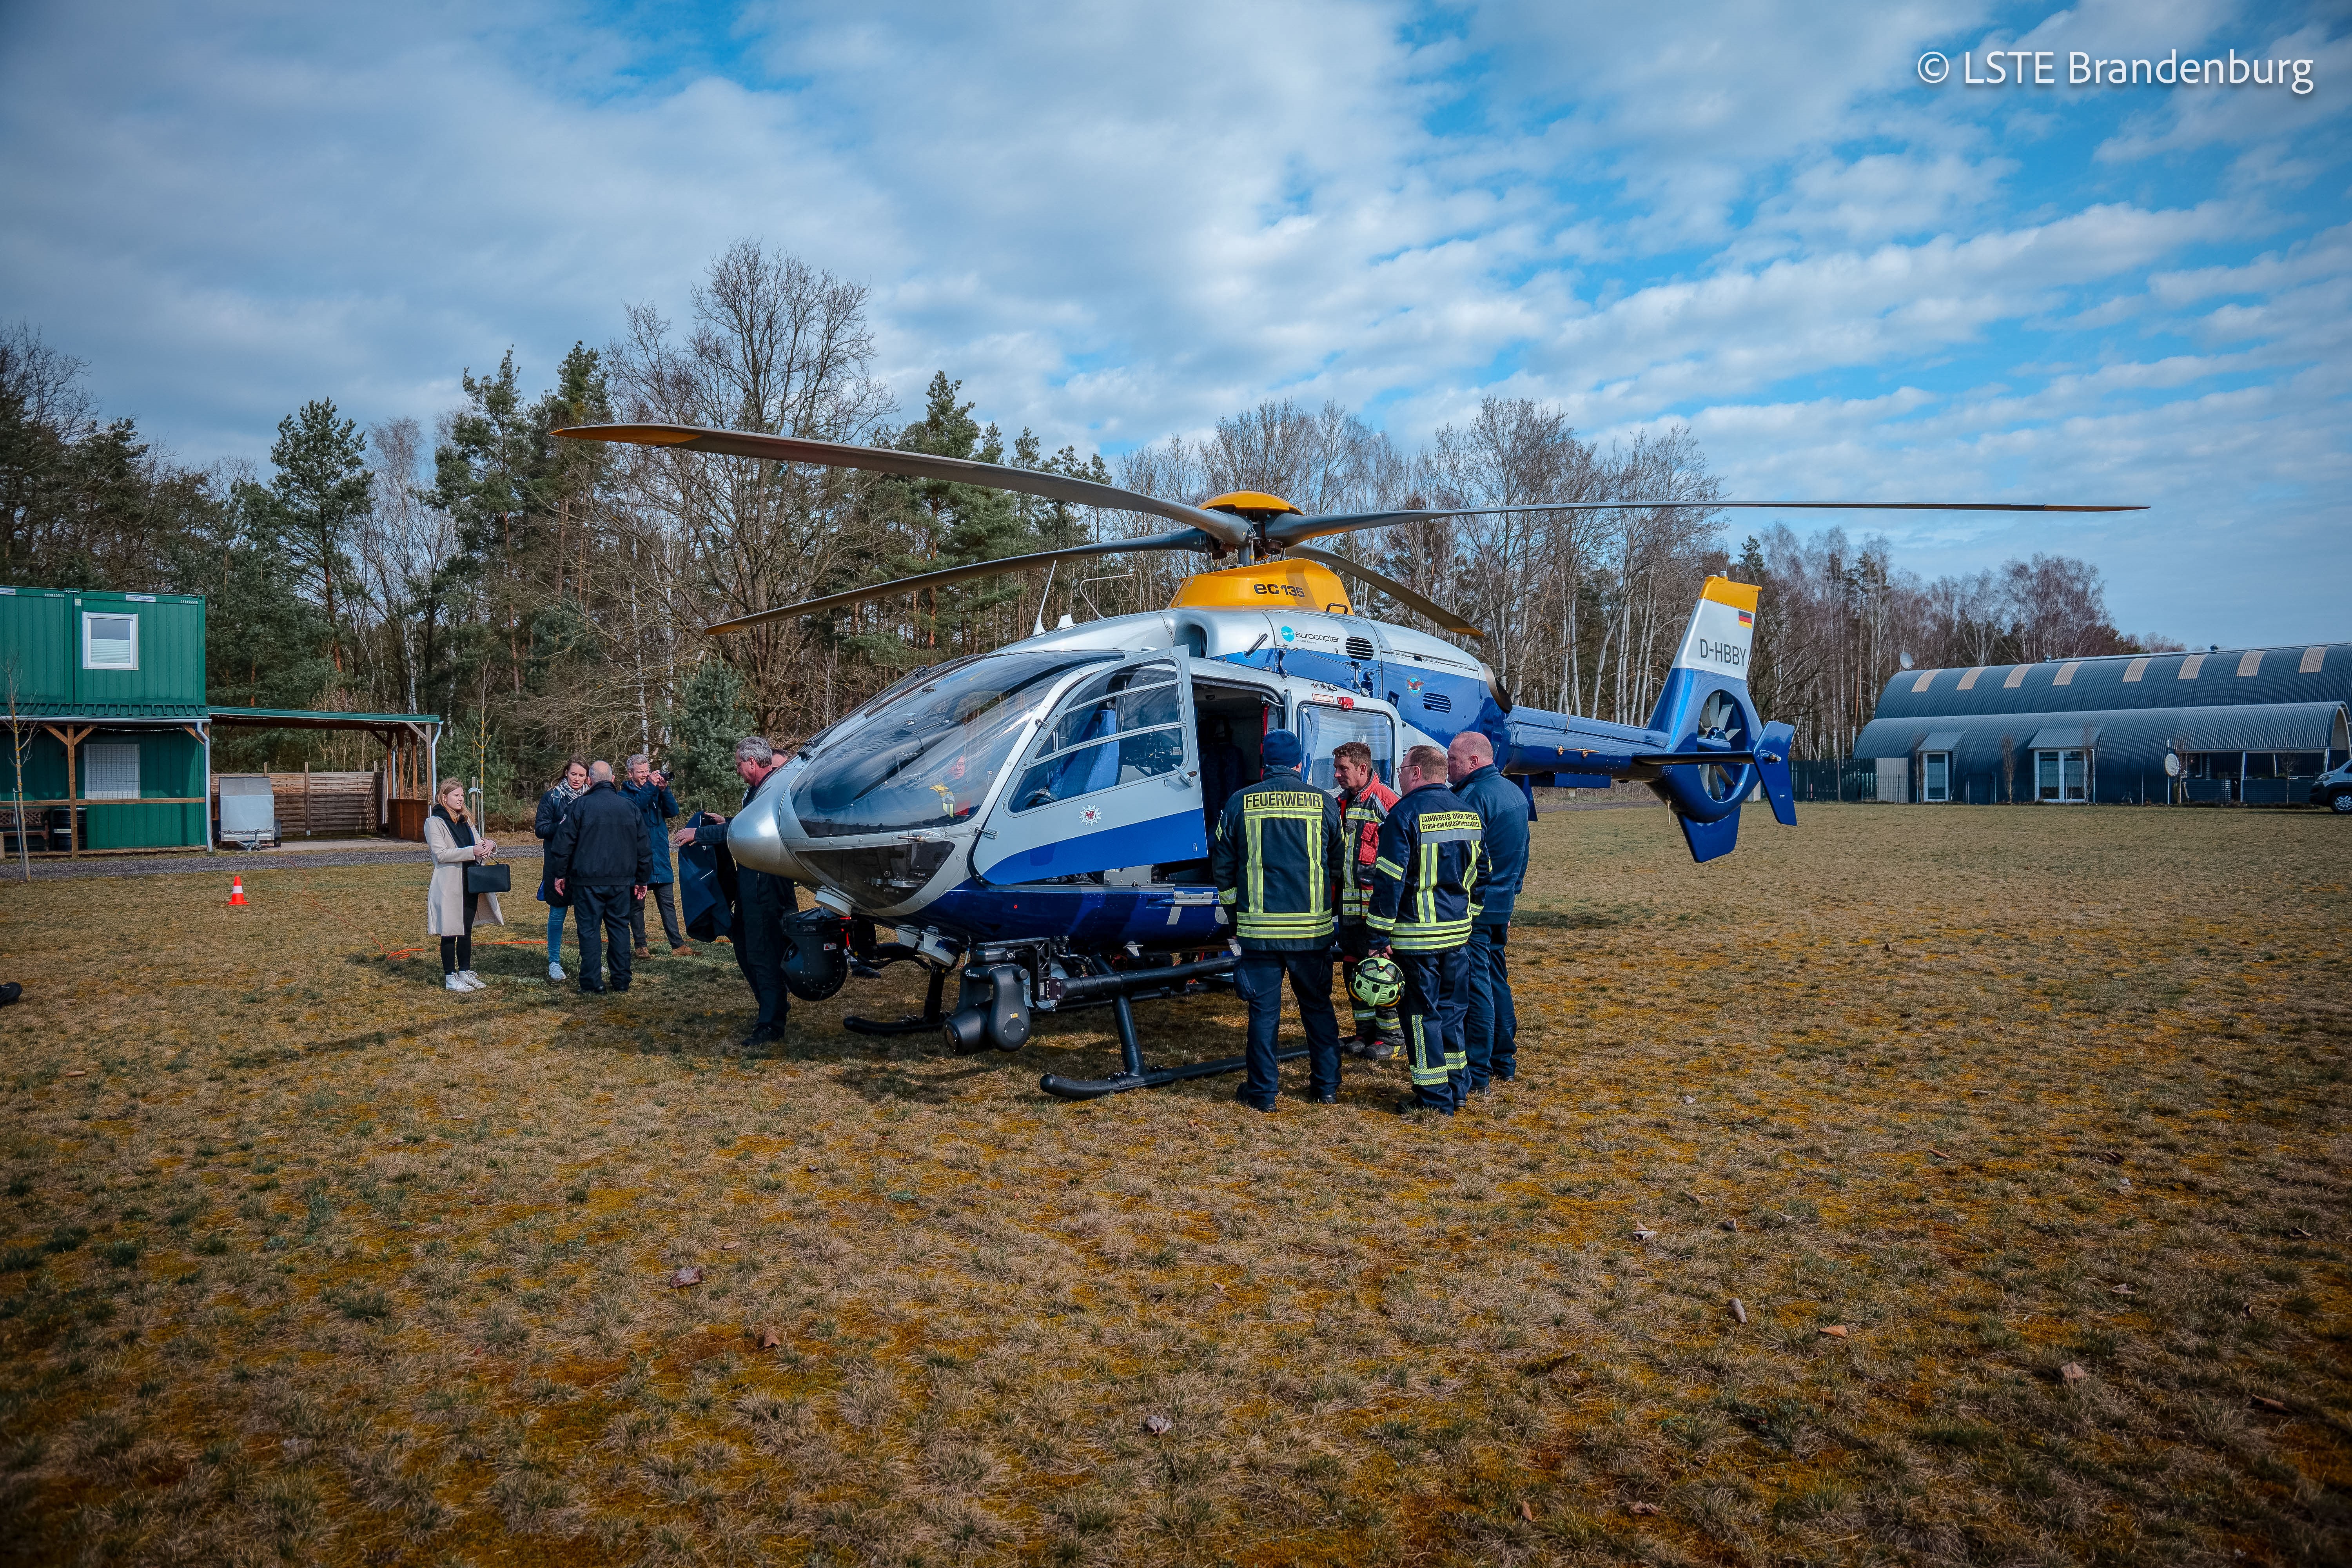 Stationsbetrieb am Hubschrauber (EC 135) der Polizei des Landes Brandenburg